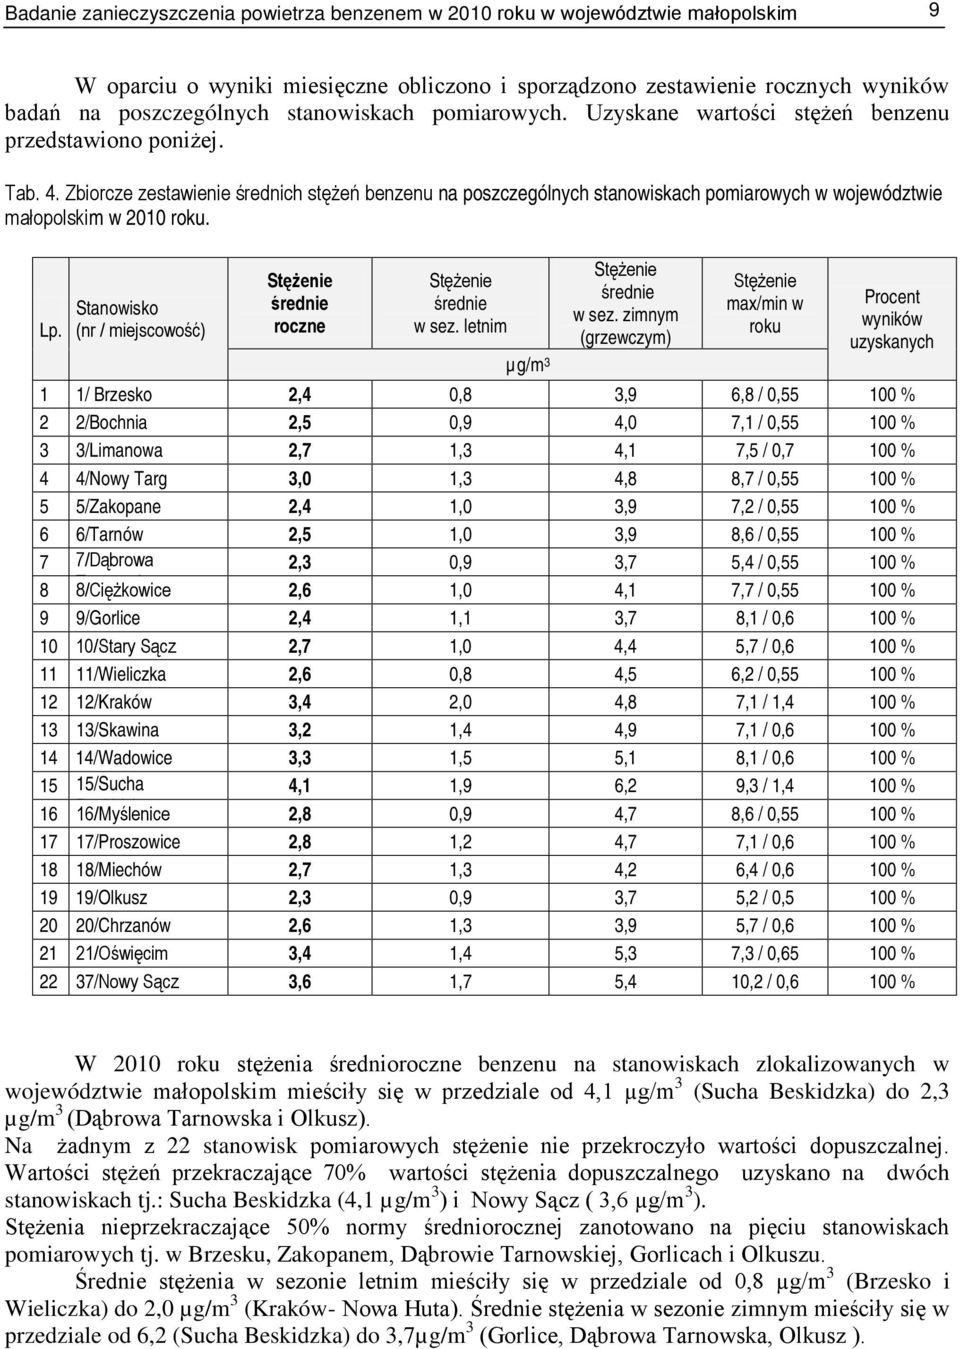 Zbiorcze zestawienie średnich stężeń benzenu na poszczególnych stanowiskach pomiarowych w województwie małopolskim w 2010 roku. Lp.